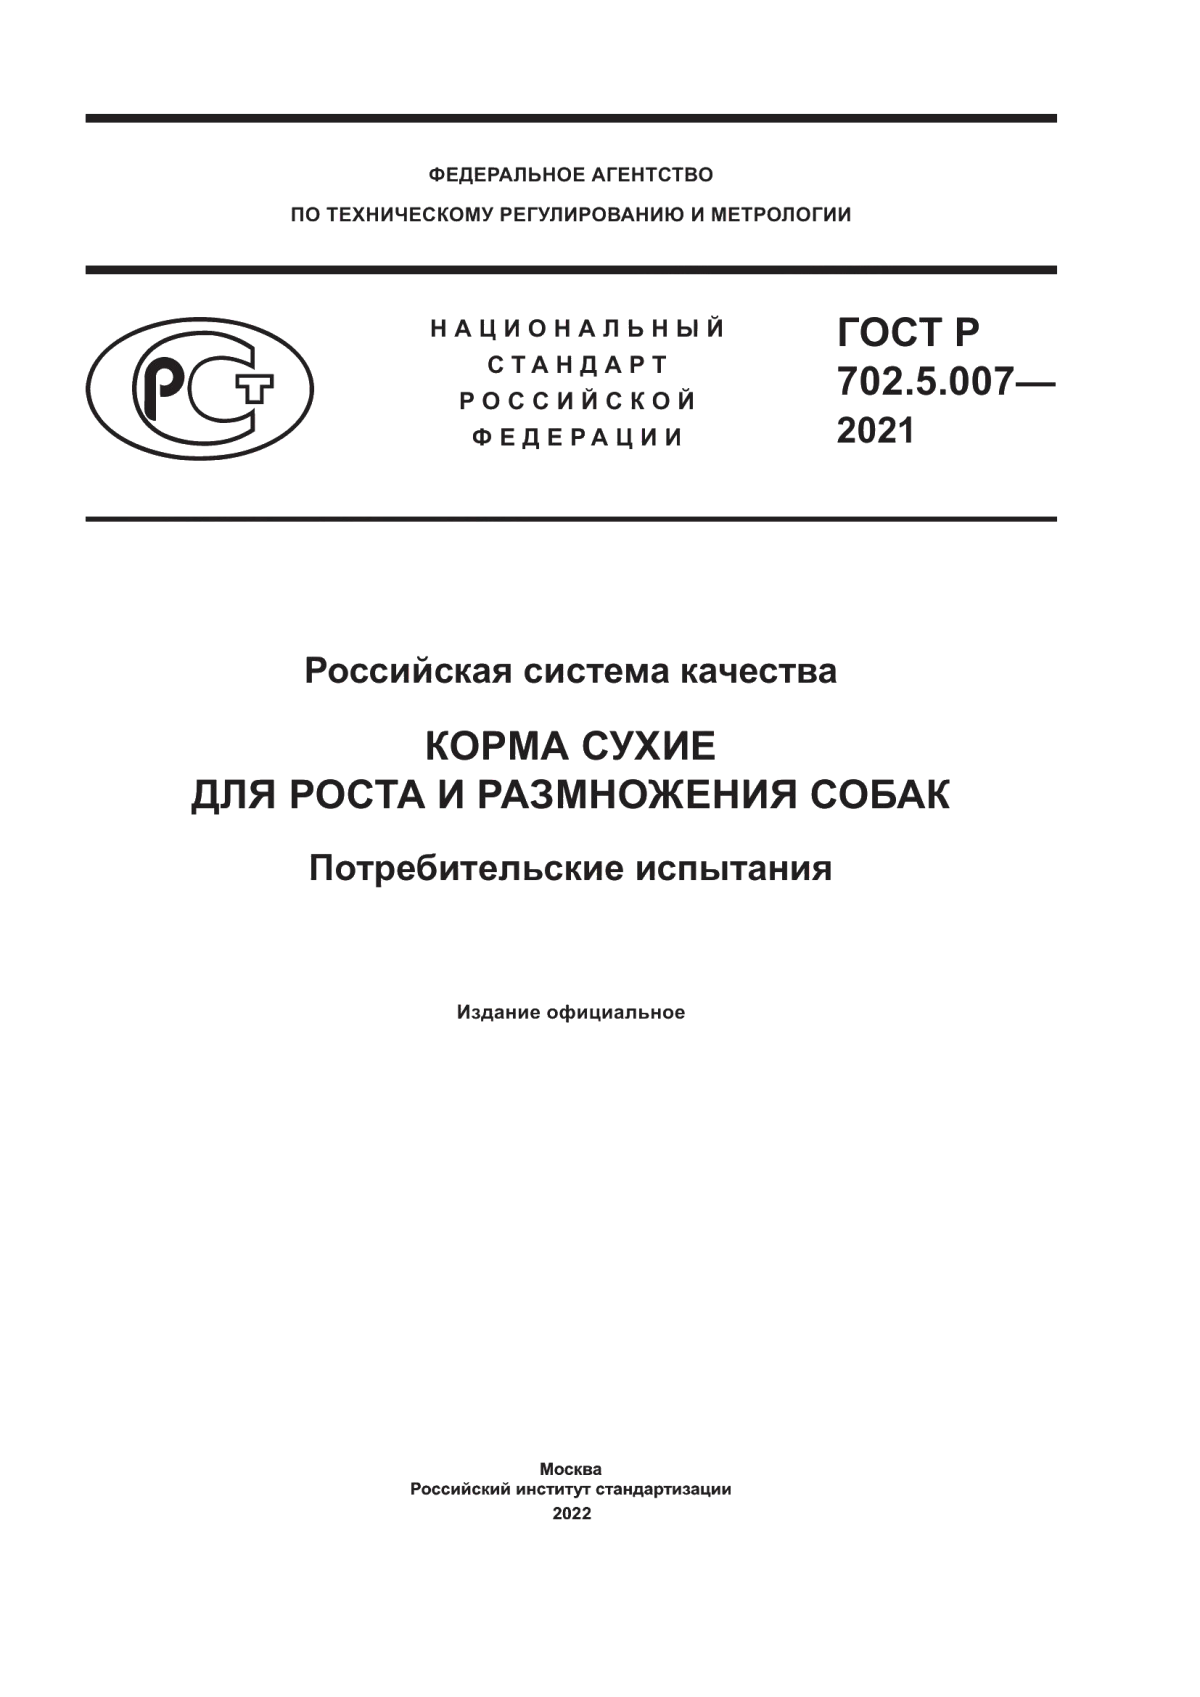 ГОСТ Р 702.5.007-2021 Российская система качества. Корма сухие для роста и размножения собак. Потребительские испытания